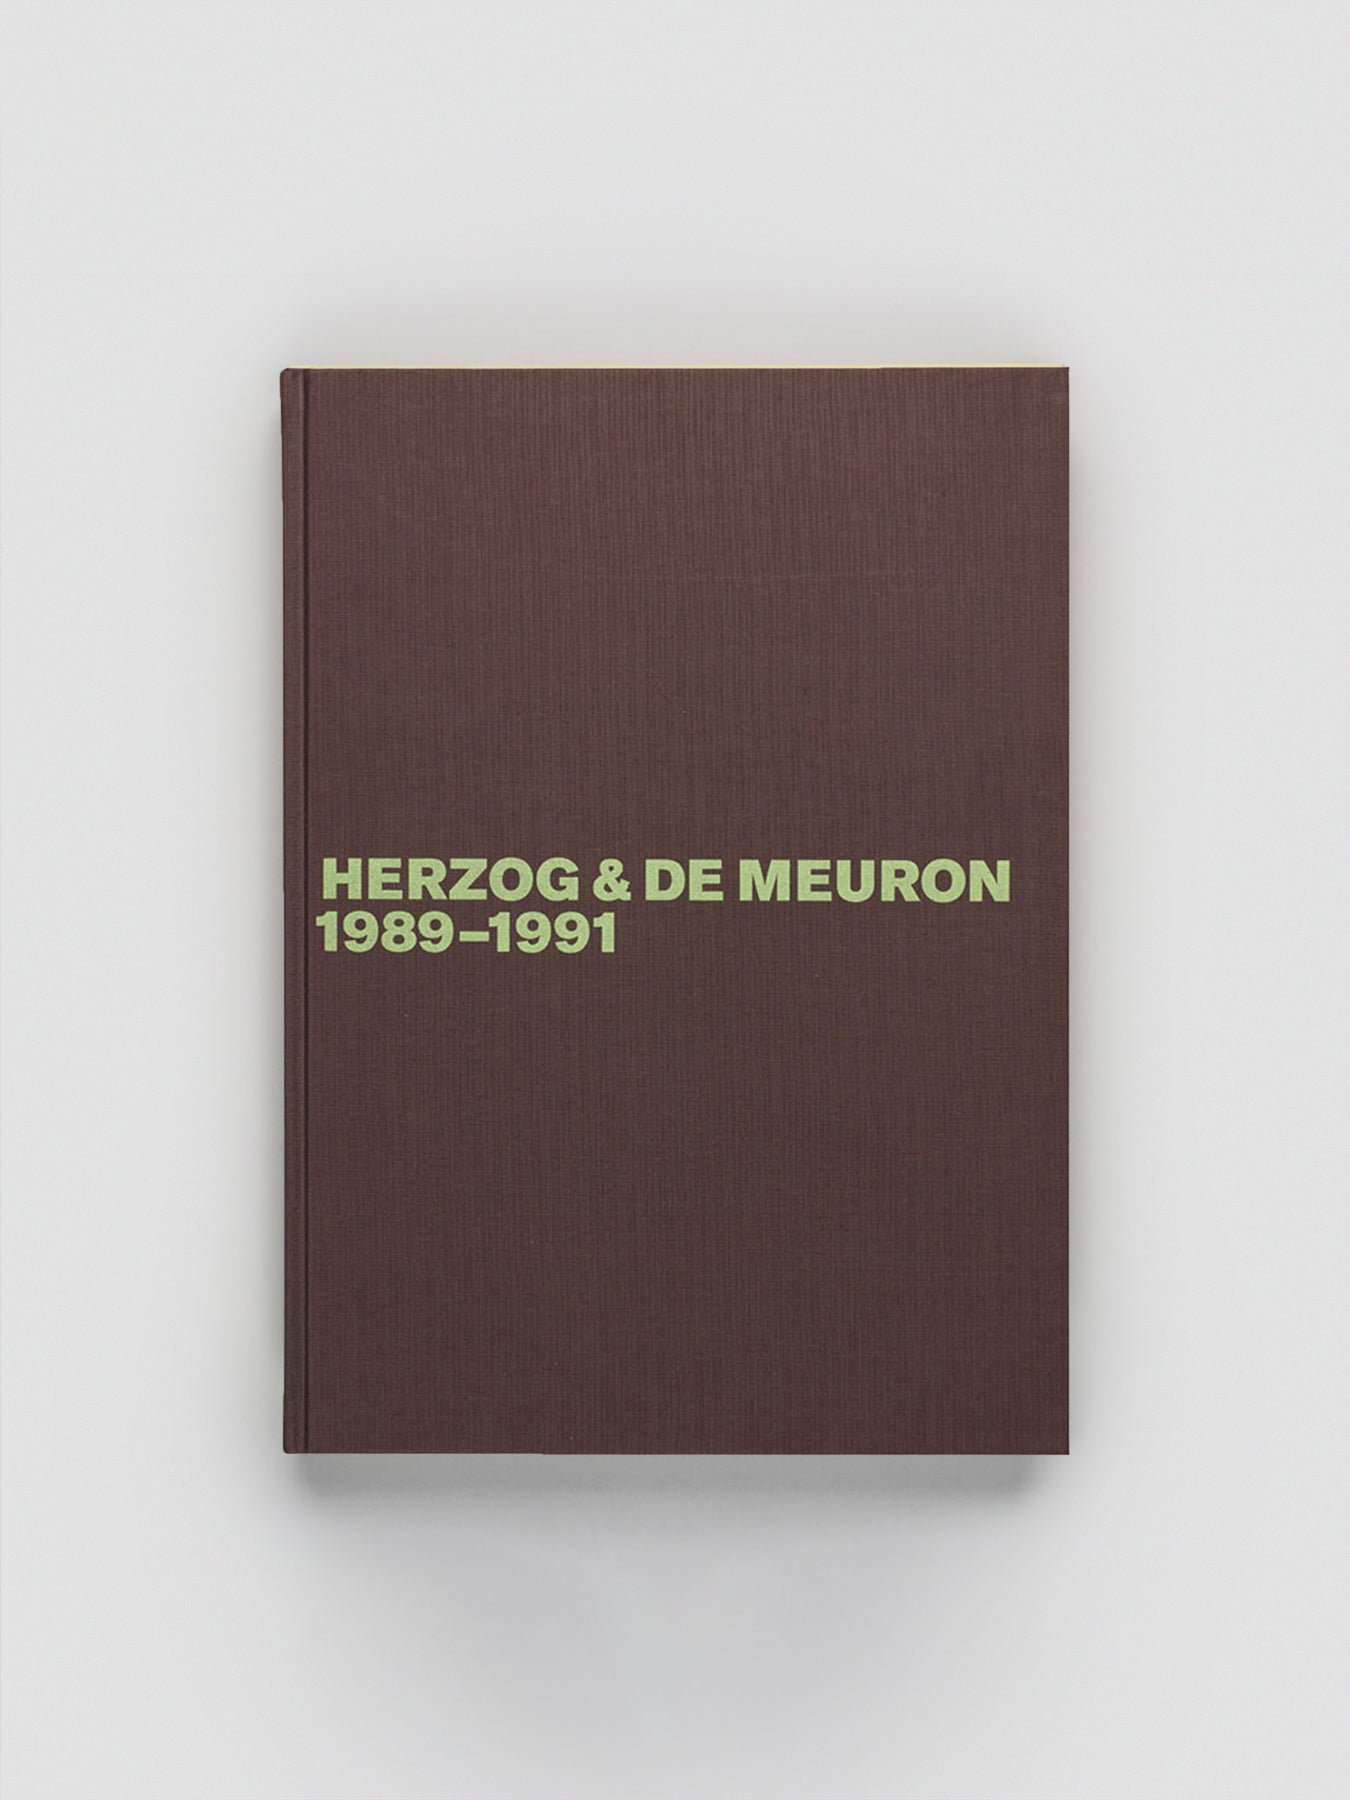 Herzog & de Meuron 1989-1991 Volume 2